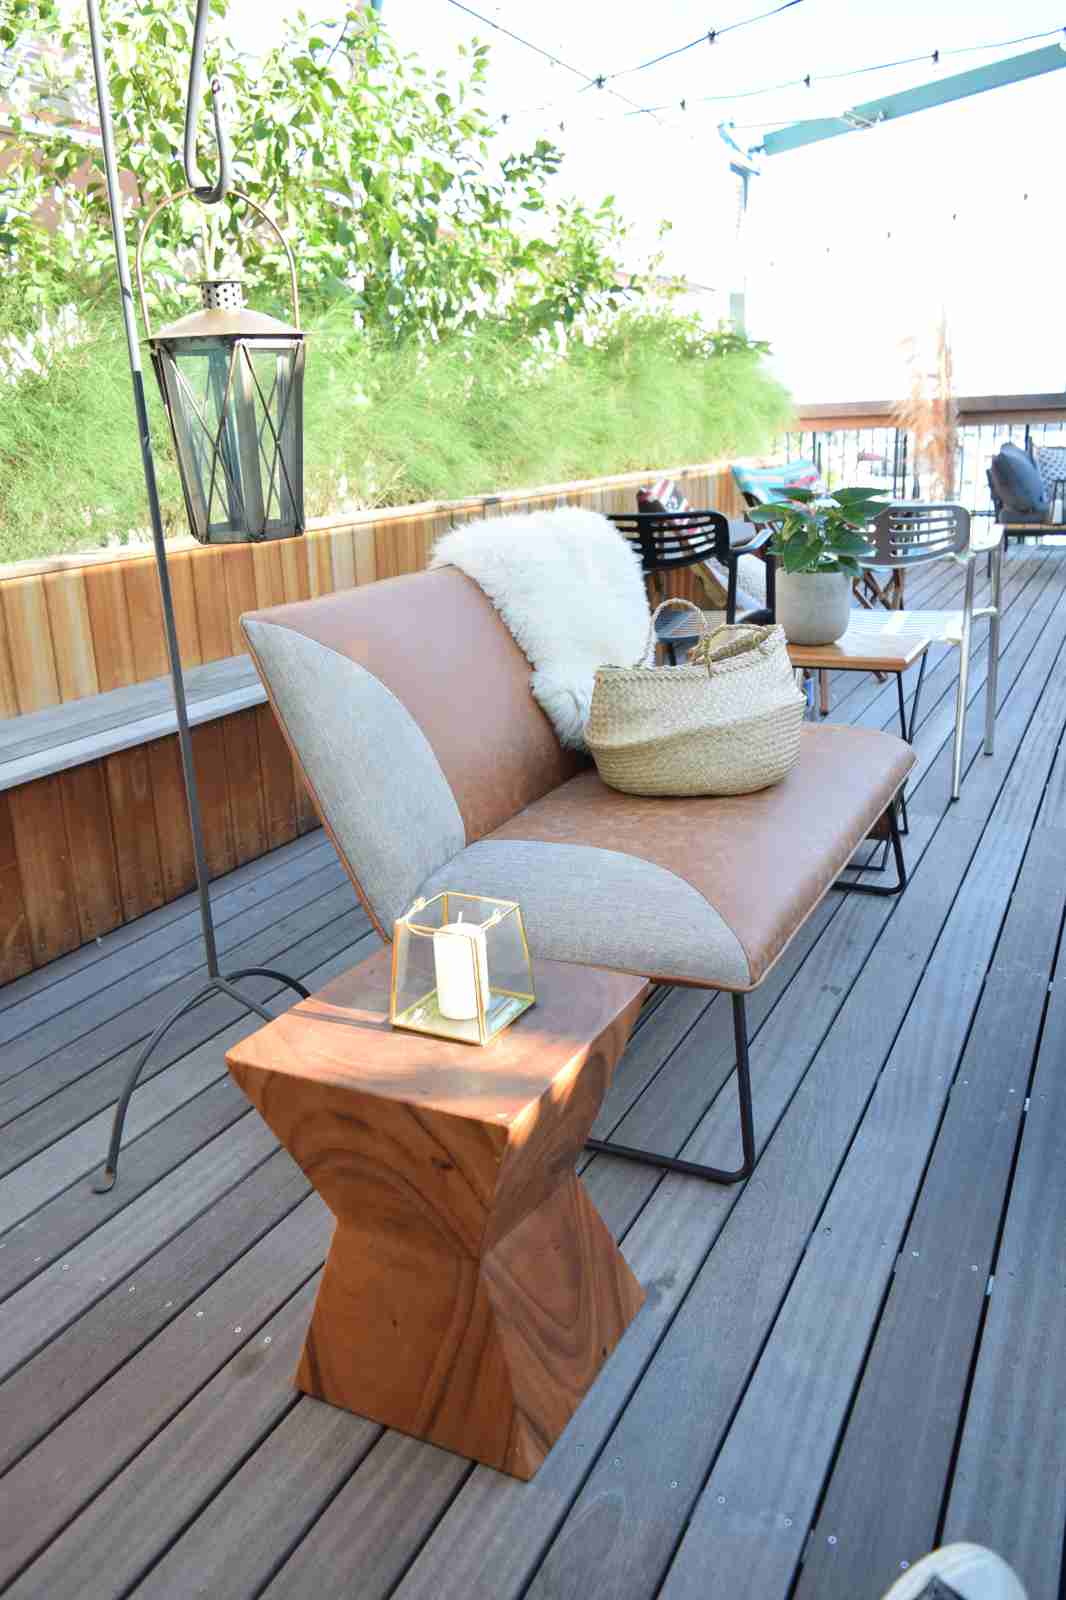 スツール 椅子 チェア ローチェア サイドテーブル 台形面 天然木 古材